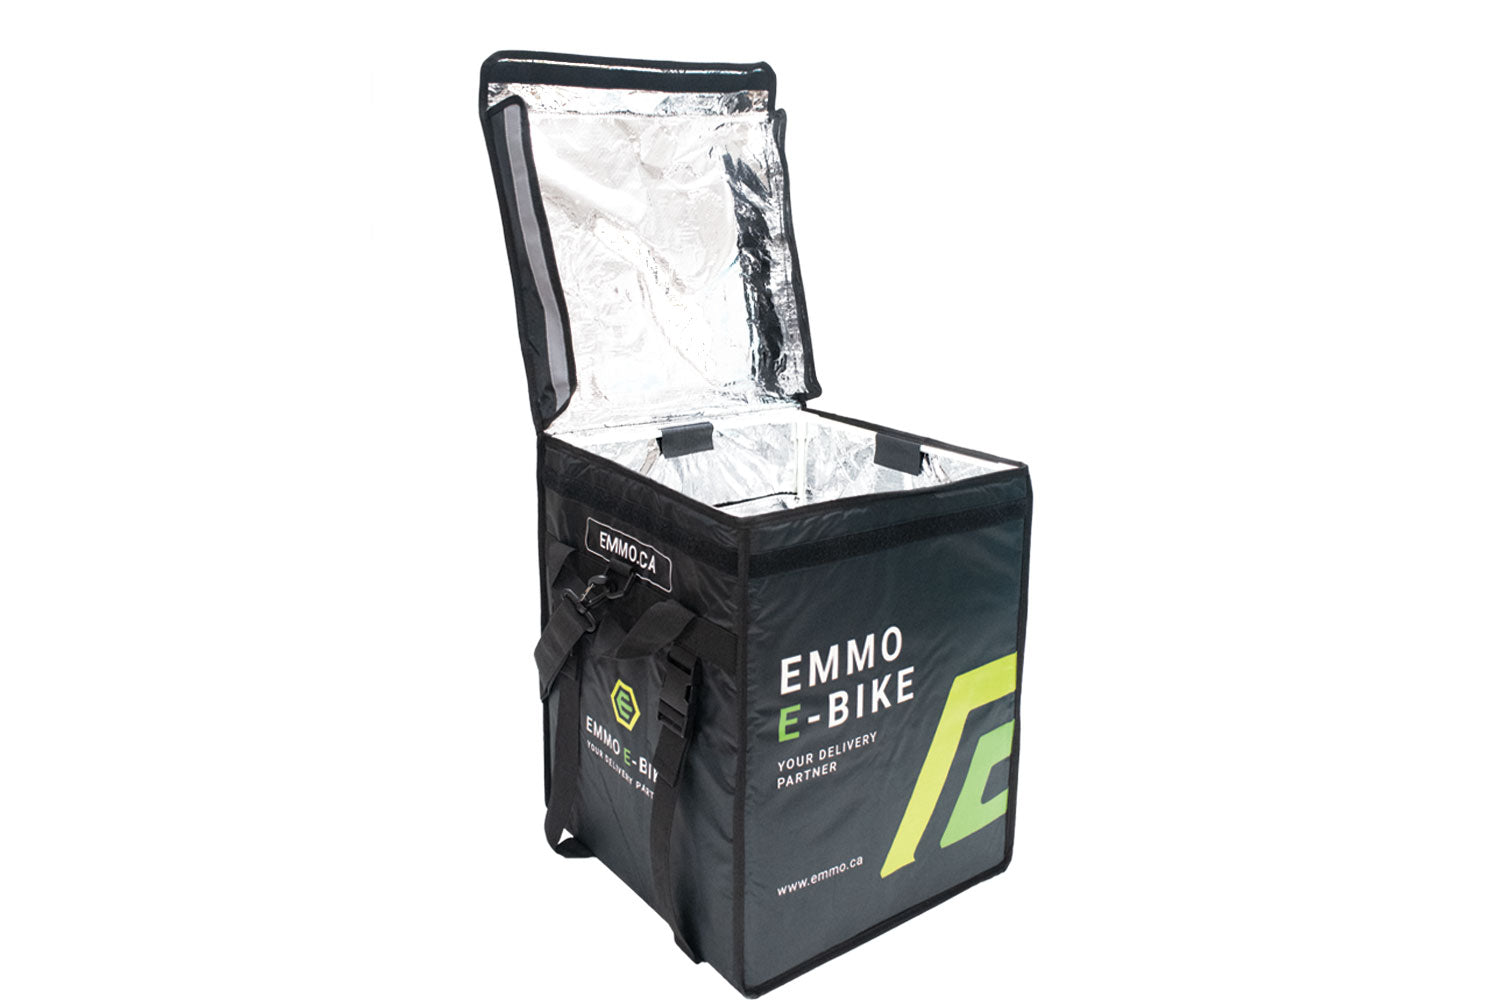 EMMO Delivery Bag